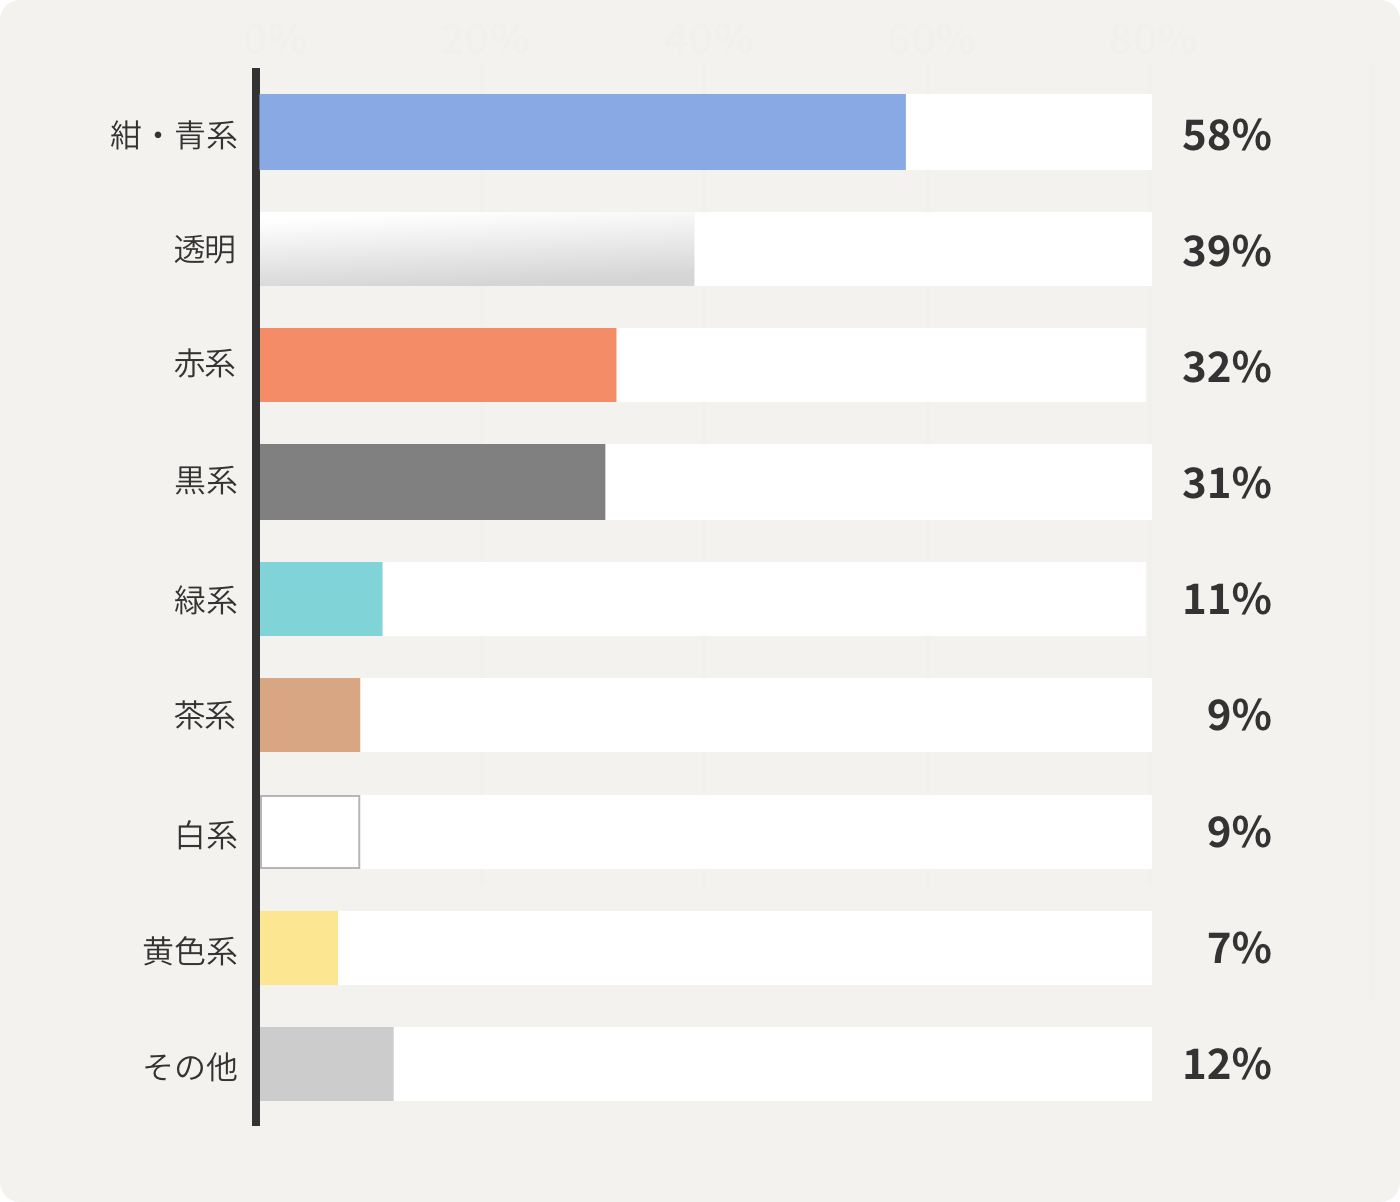 紺・青系58% 透明39% 赤系32% 黒系31% 緑系11% 茶系9% 白系9% 黄色系7% その他12%